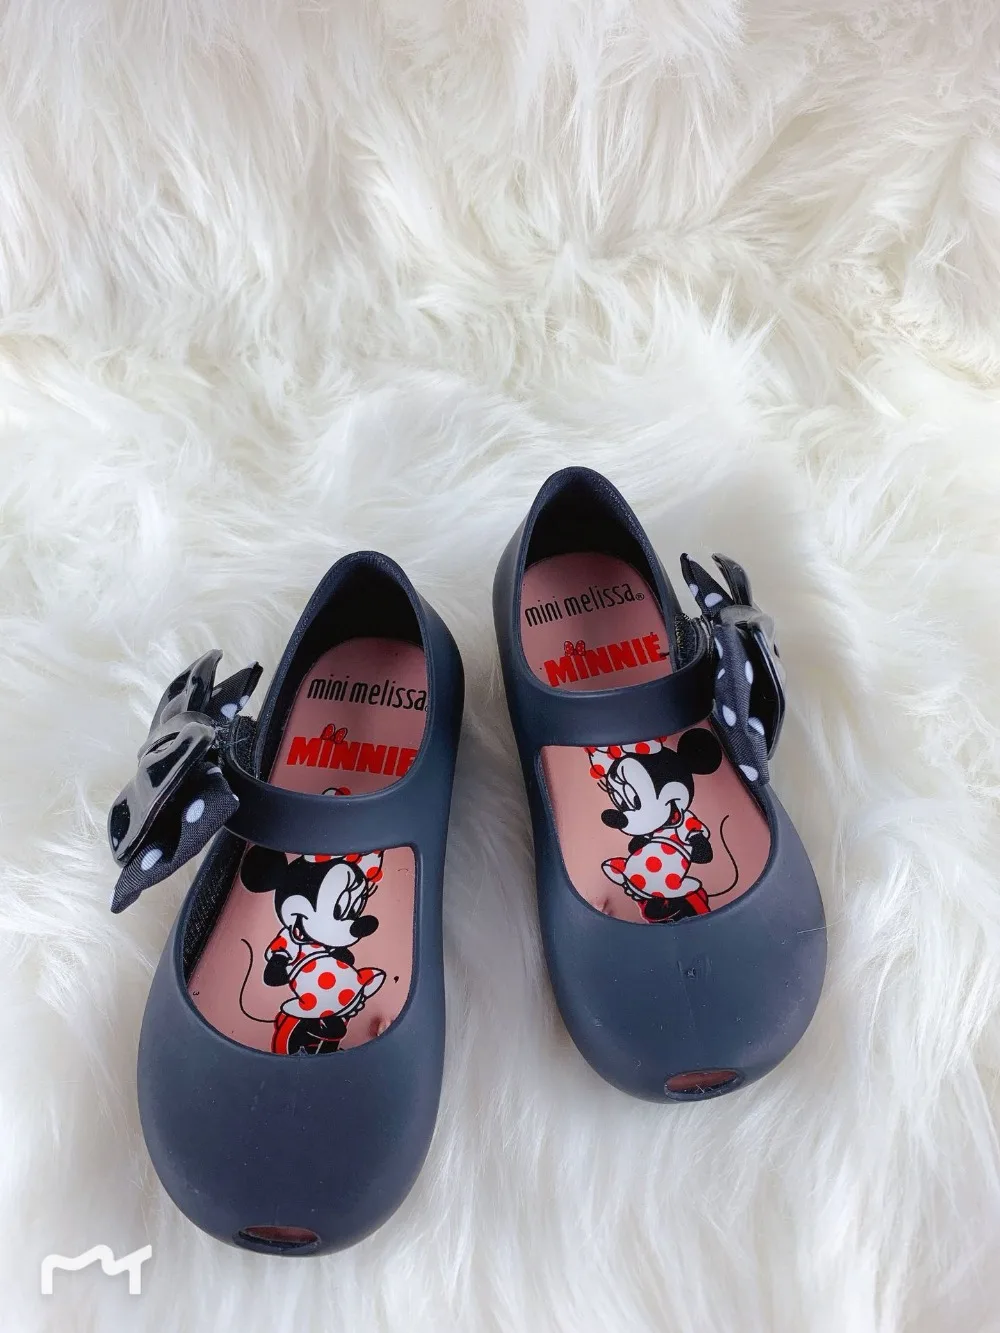 Мини Мелисса желе обувь для девочек с Микки лук Мелисса обувь для девочек для детей Мелисса sandalia infantil для девочек